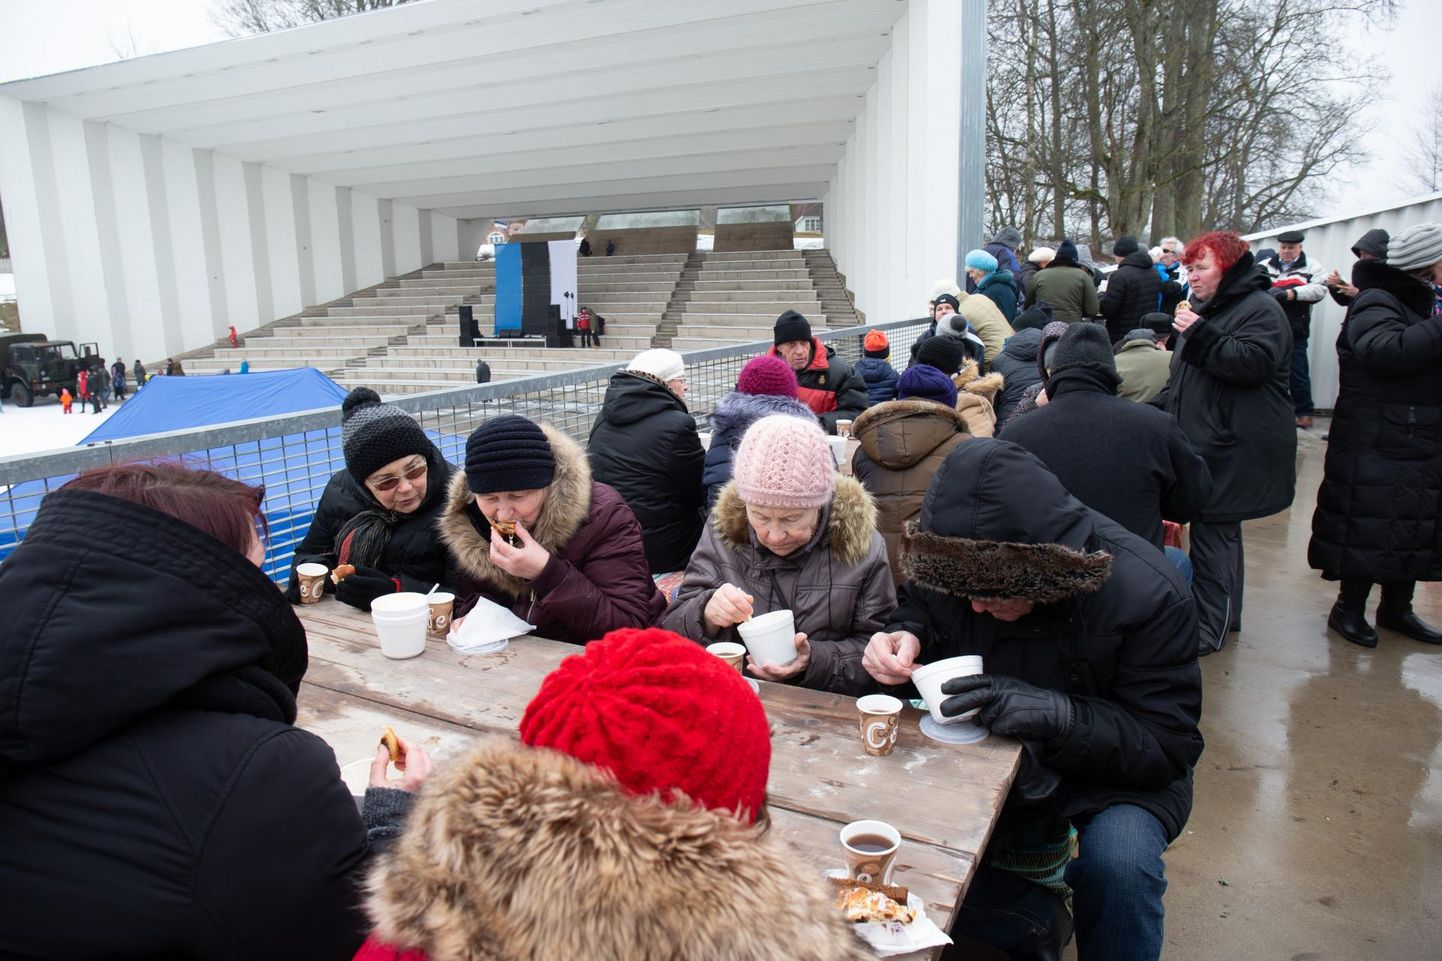 Ühine supi- ja kringlisöömine on olnud aastaid Viljandis riigi aastapäeva tavade seas.